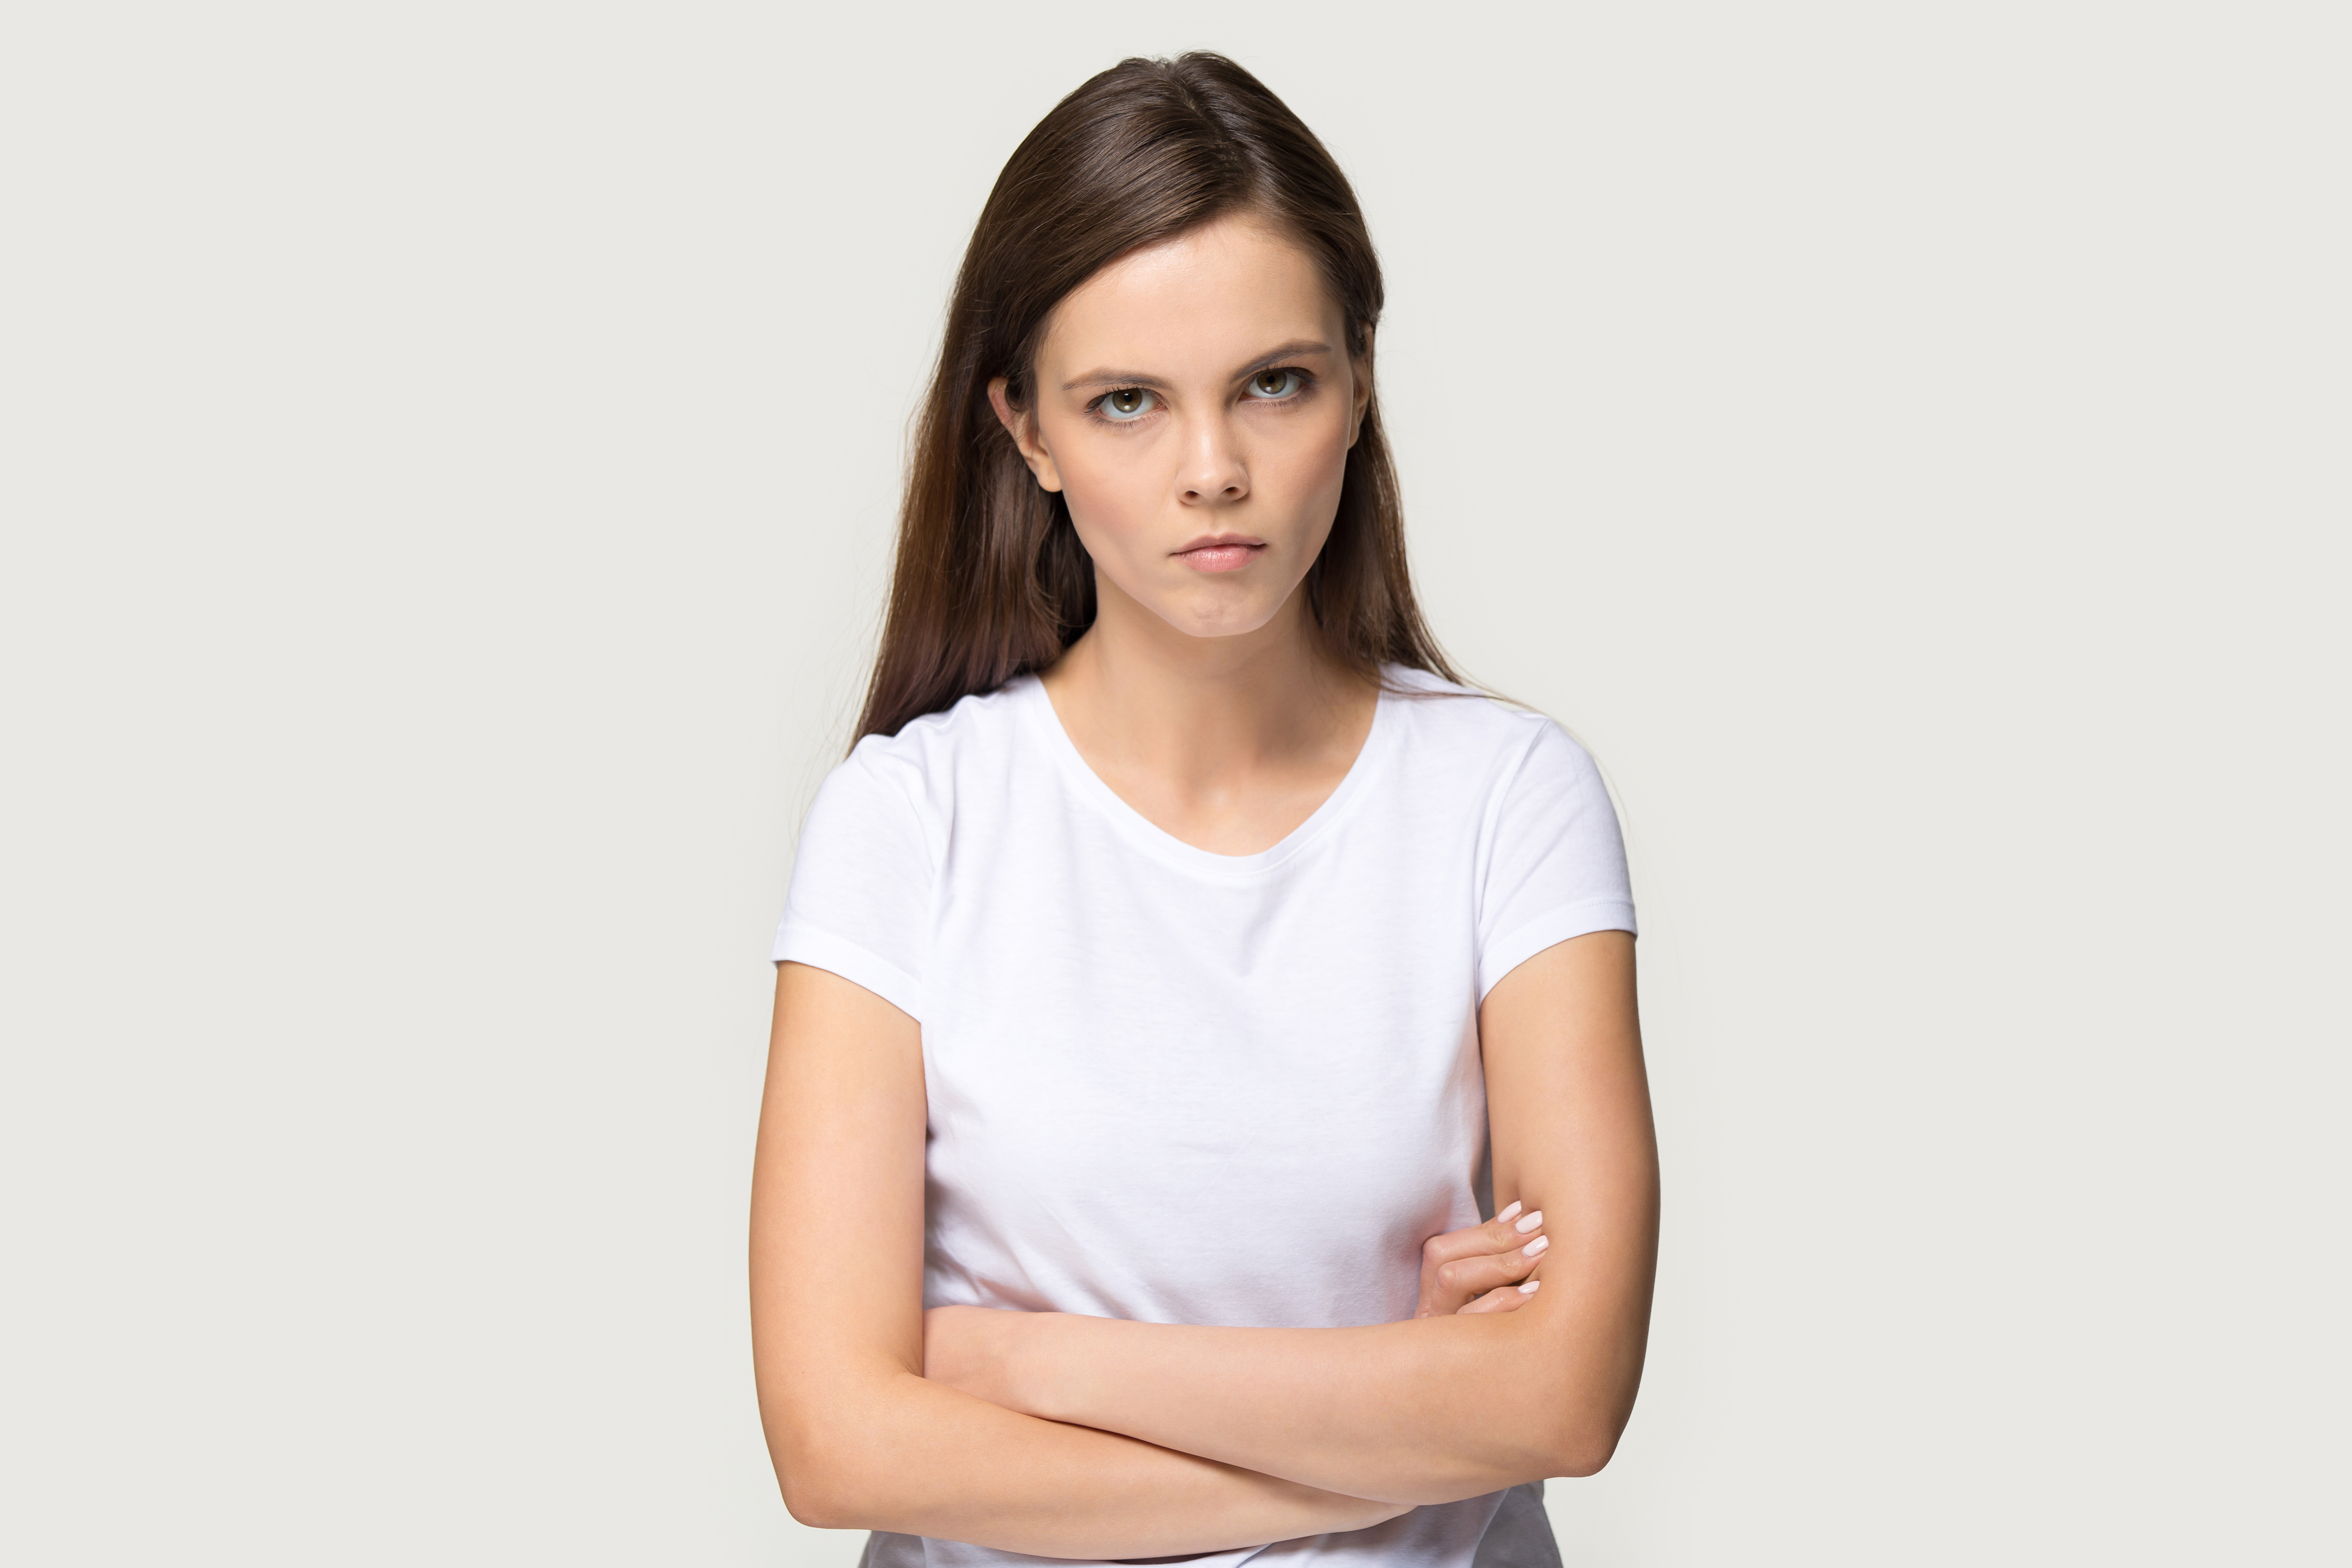 Une jeune femme en colère debout, les bras croisés | Source : Shutterstock